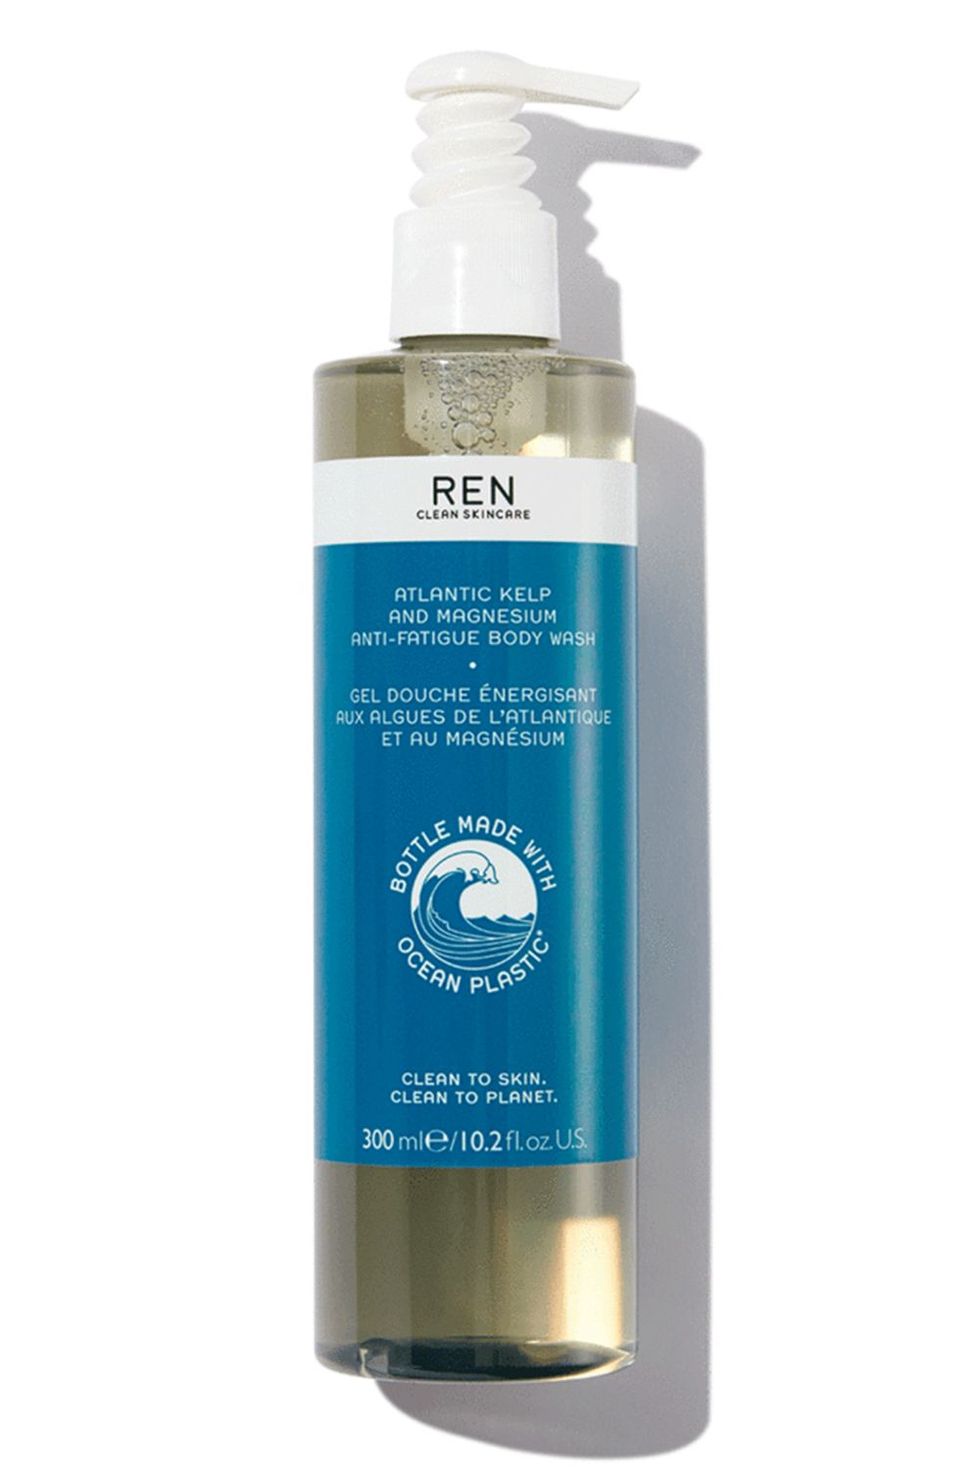 Ren Clean Skincare Atlantic Kelp and Magnesium Anti-Fatigue Body Wash